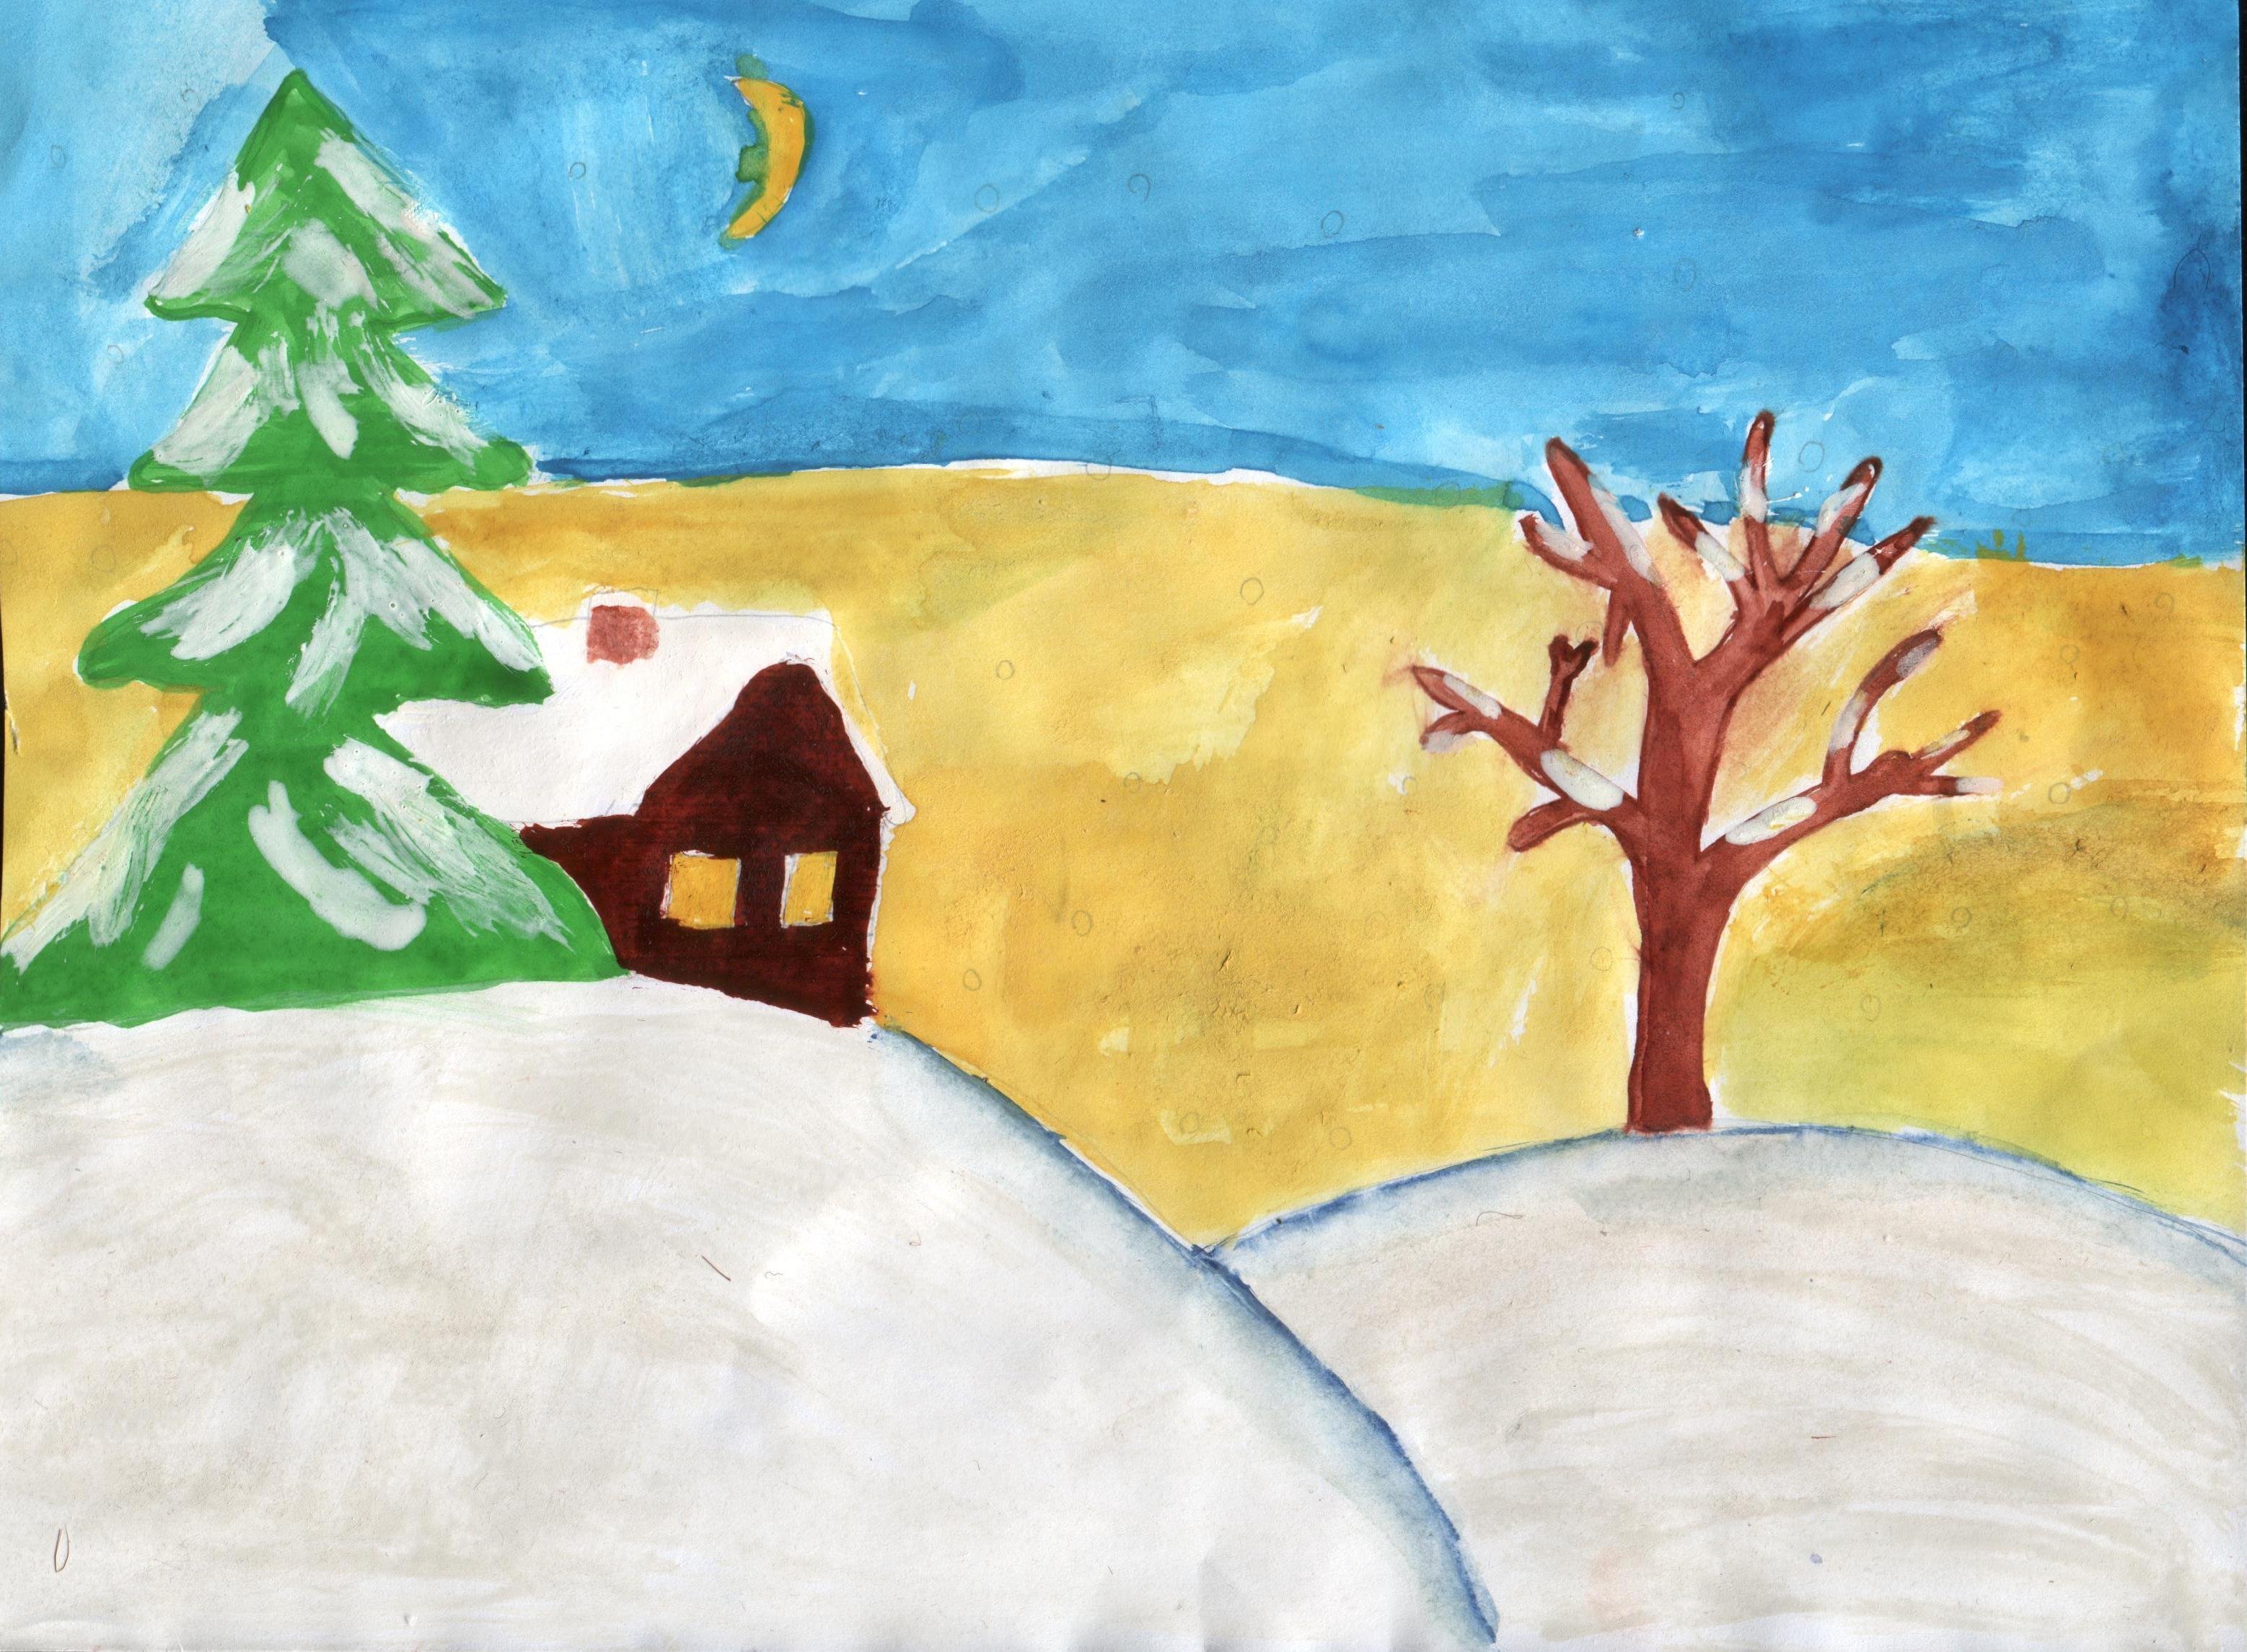 зимние картинки для детей рисовать